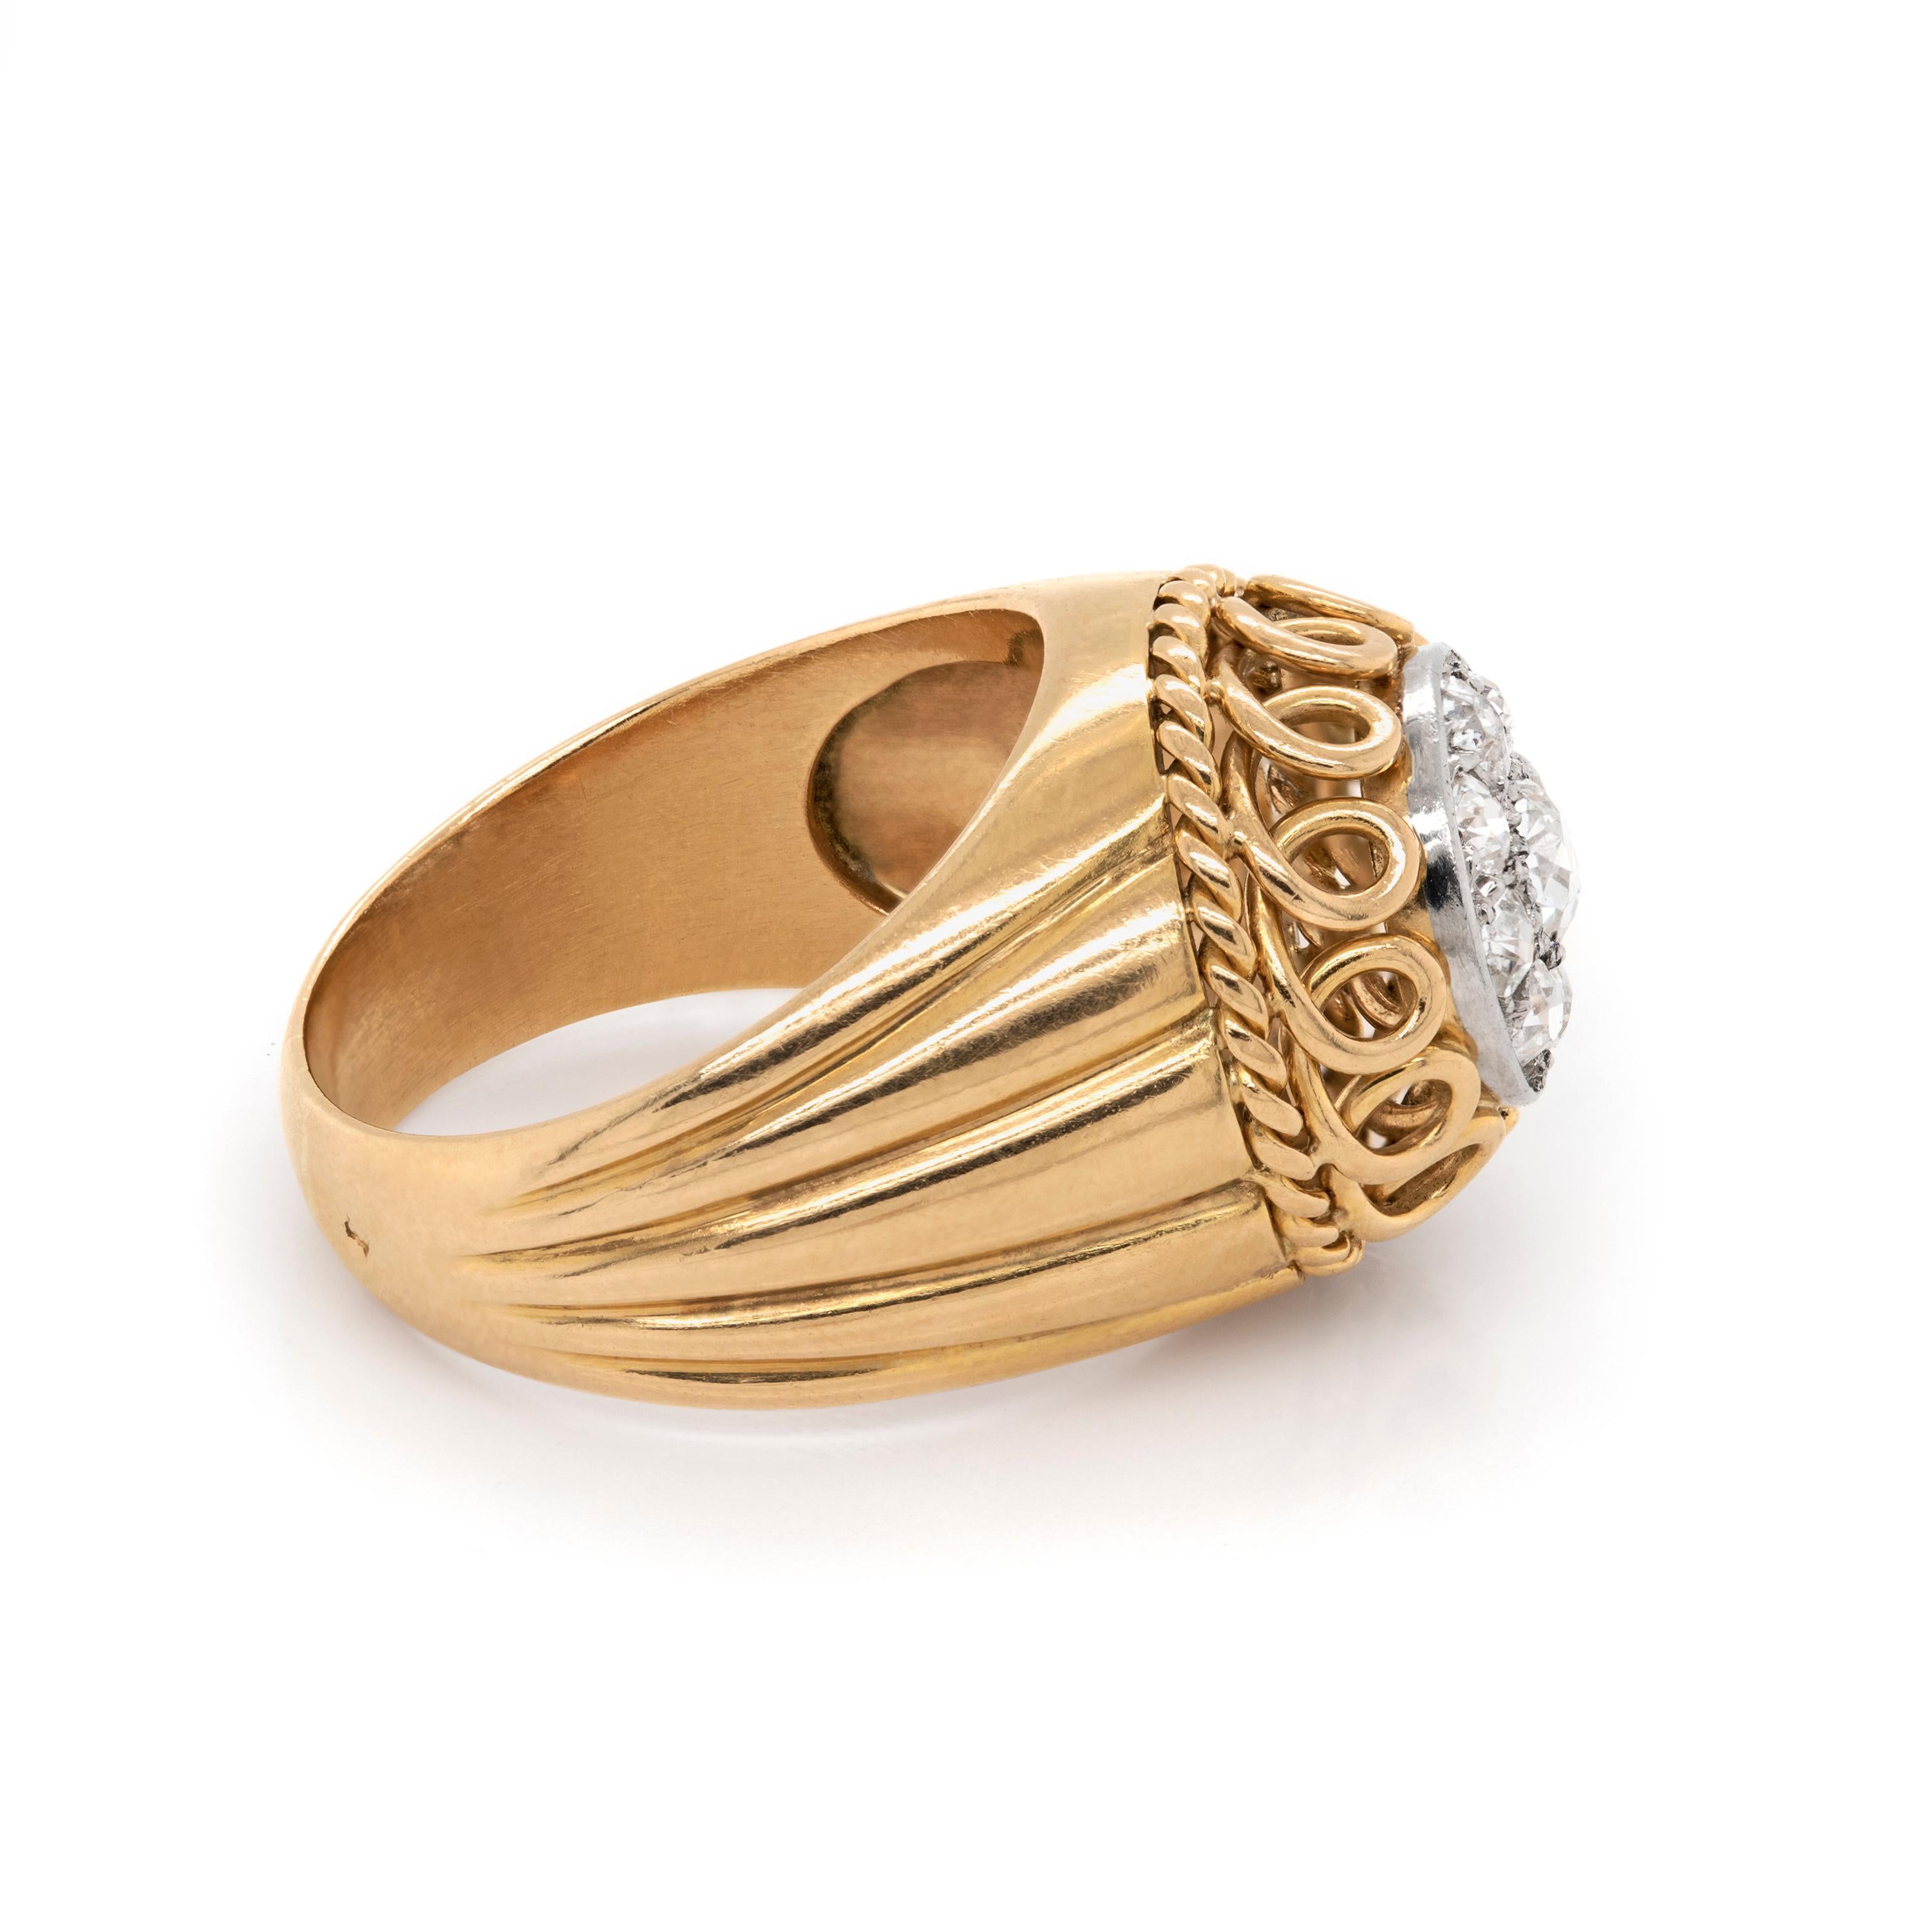 Dieser handgefertigte, gewölbte Ring im Vintage-Stil ist mit einem 0,29 ct. Diamanten im Altschliff in der Mitte besetzt, der von 8 Diamanten mit einem Gewicht von ca. 0,78 ct. umgeben ist, die alle in 18 Karat Weißgold eingefasst sind. Der